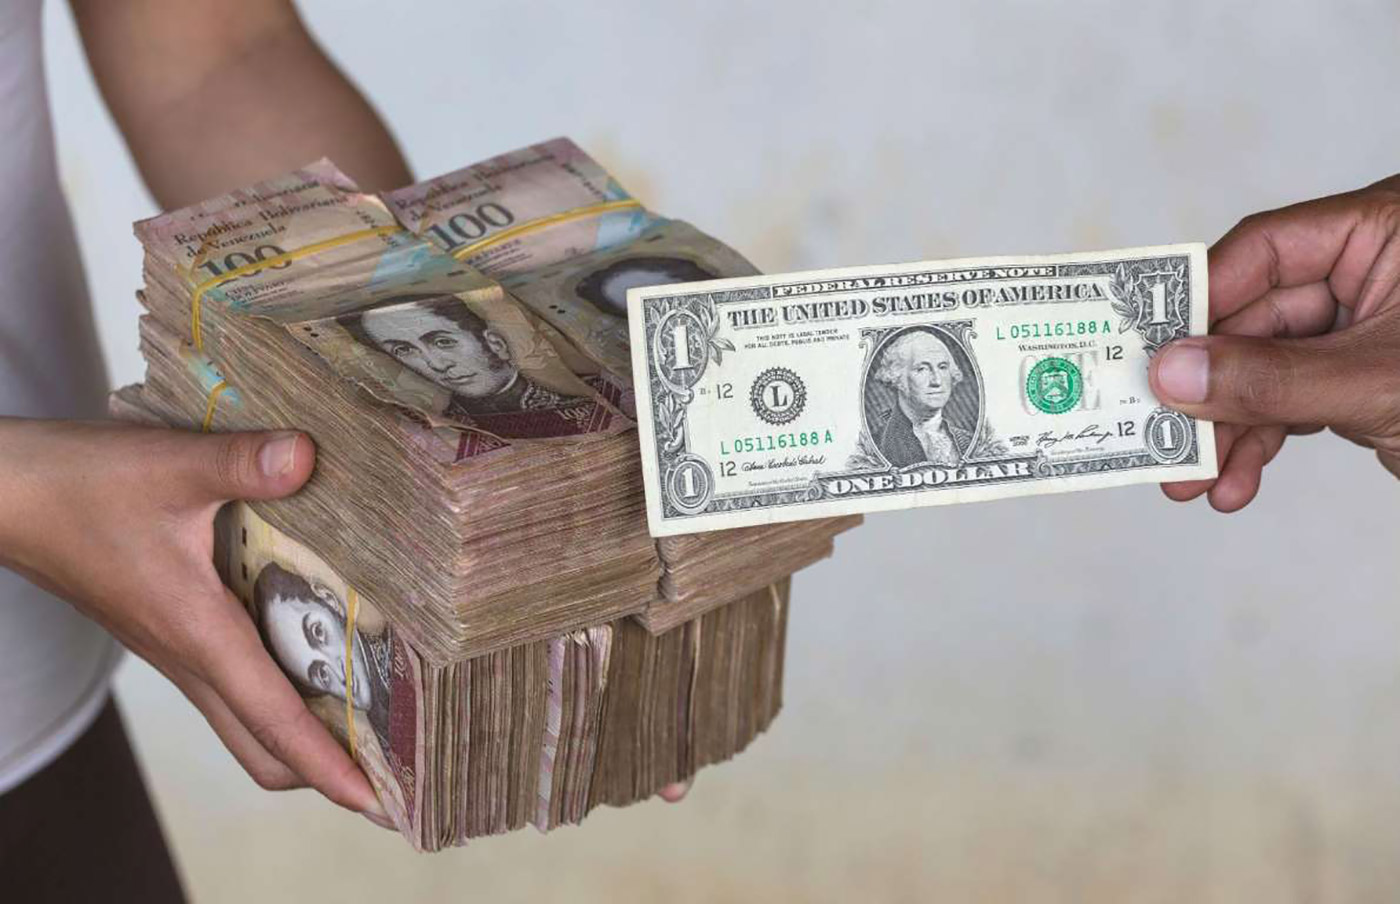 обмен валюты венесуэльский боливар